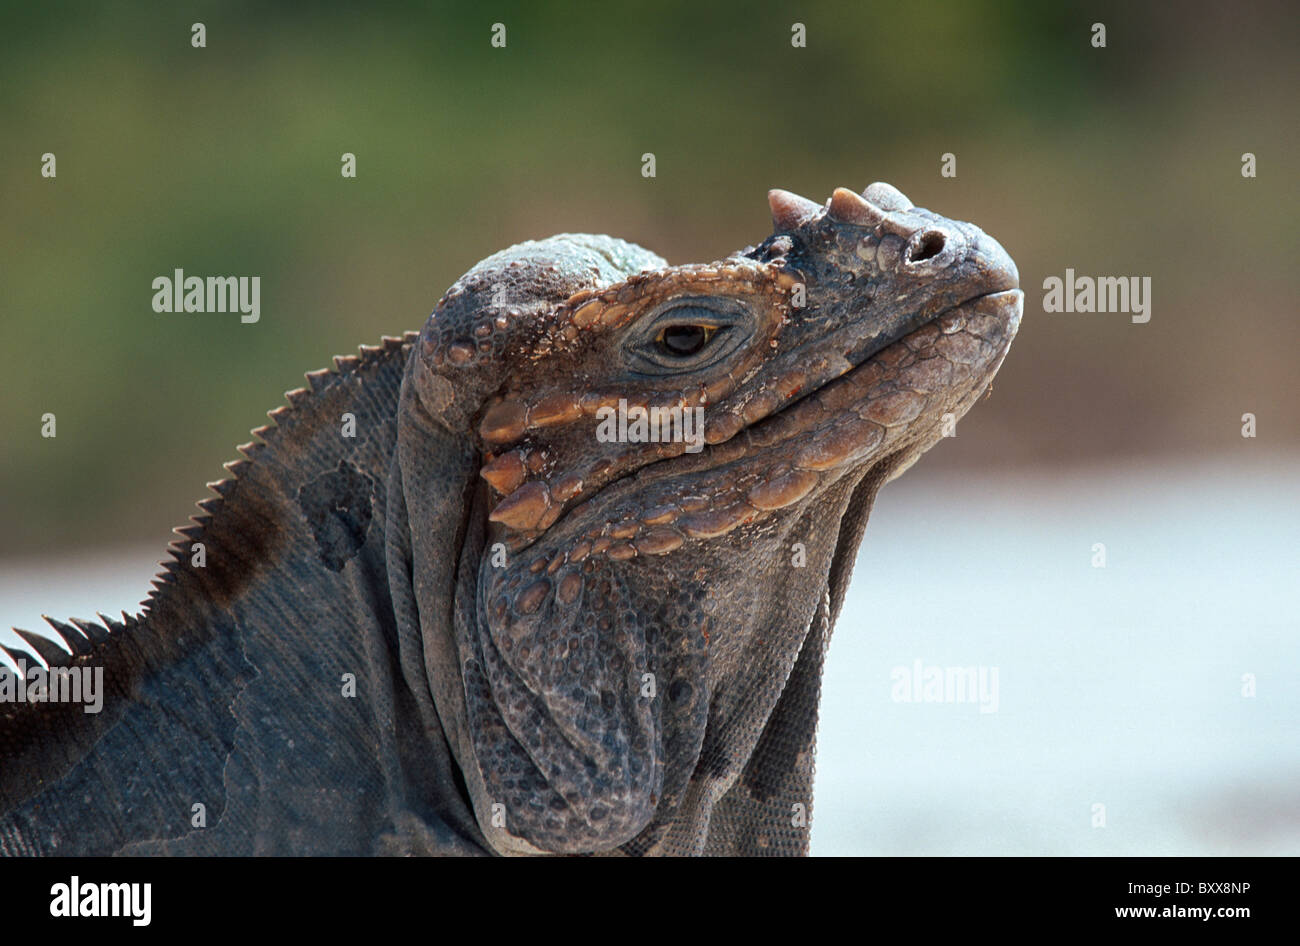 endemic iguana (Cyclura cornuta) near Lago Enriquillo, Dominican Republic Stock Photo